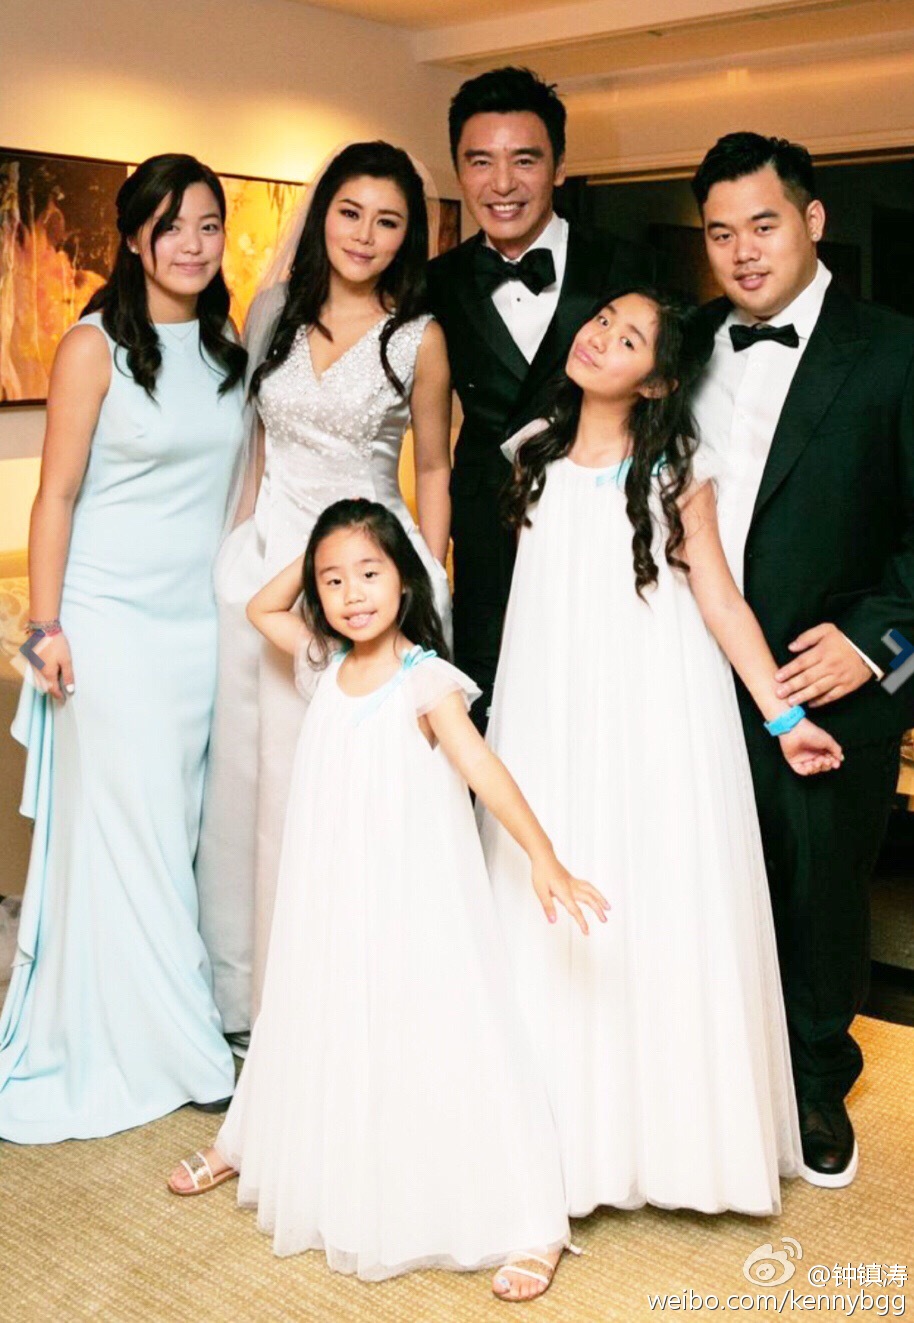 當年，鍾鎮濤與章小惠所生的一對子女鍾嘉浚、鍾嘉晴，也有出席婚禮祝婚父親。